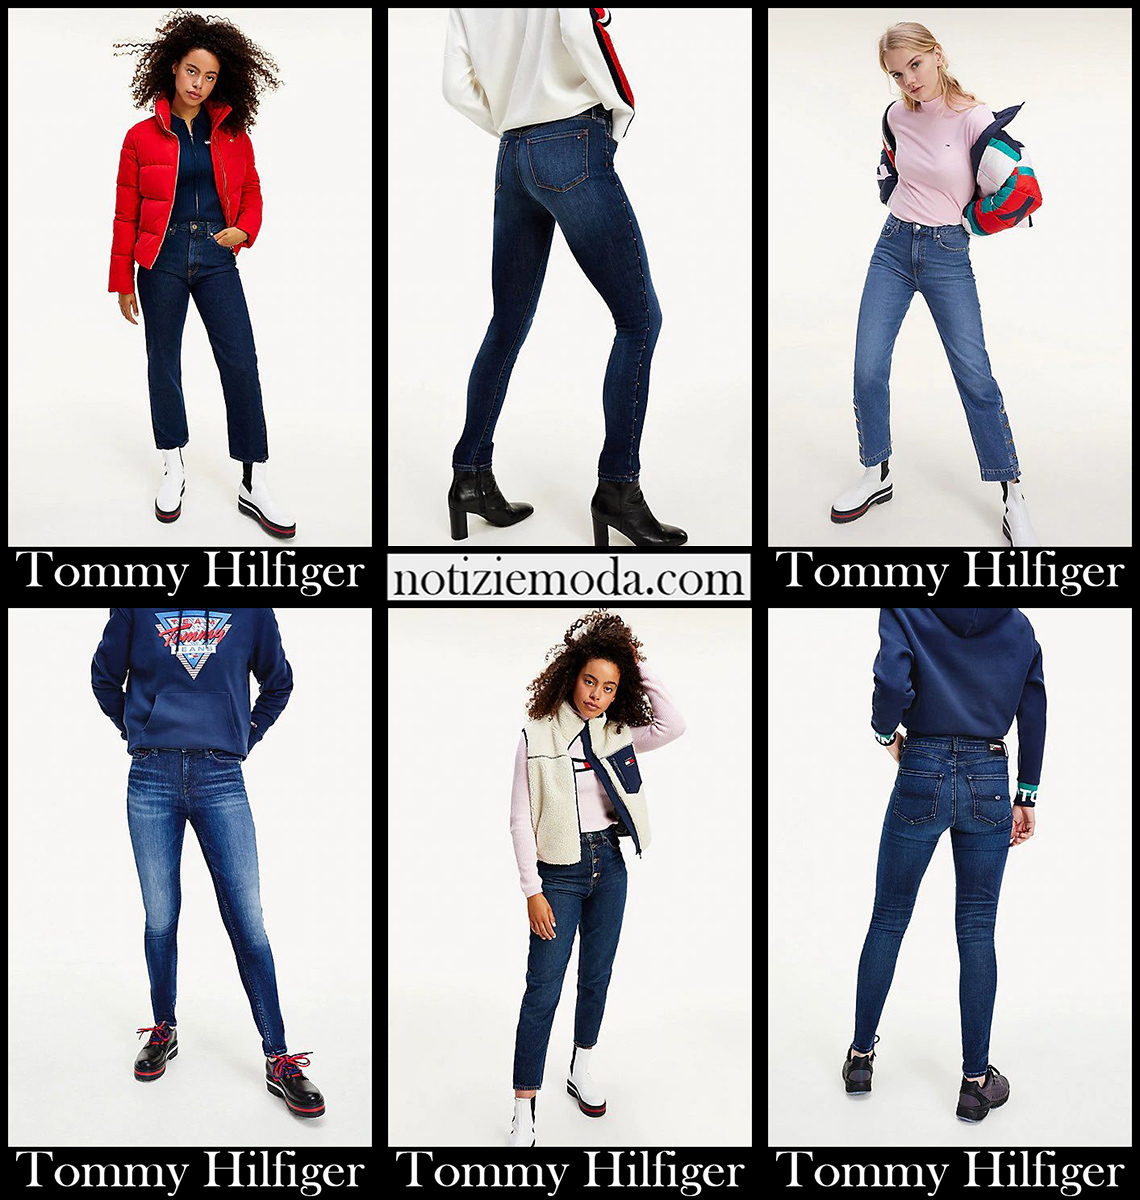 Nuovi arrivi jeans Tommy Hilfiger 2021 abbigliamento donna